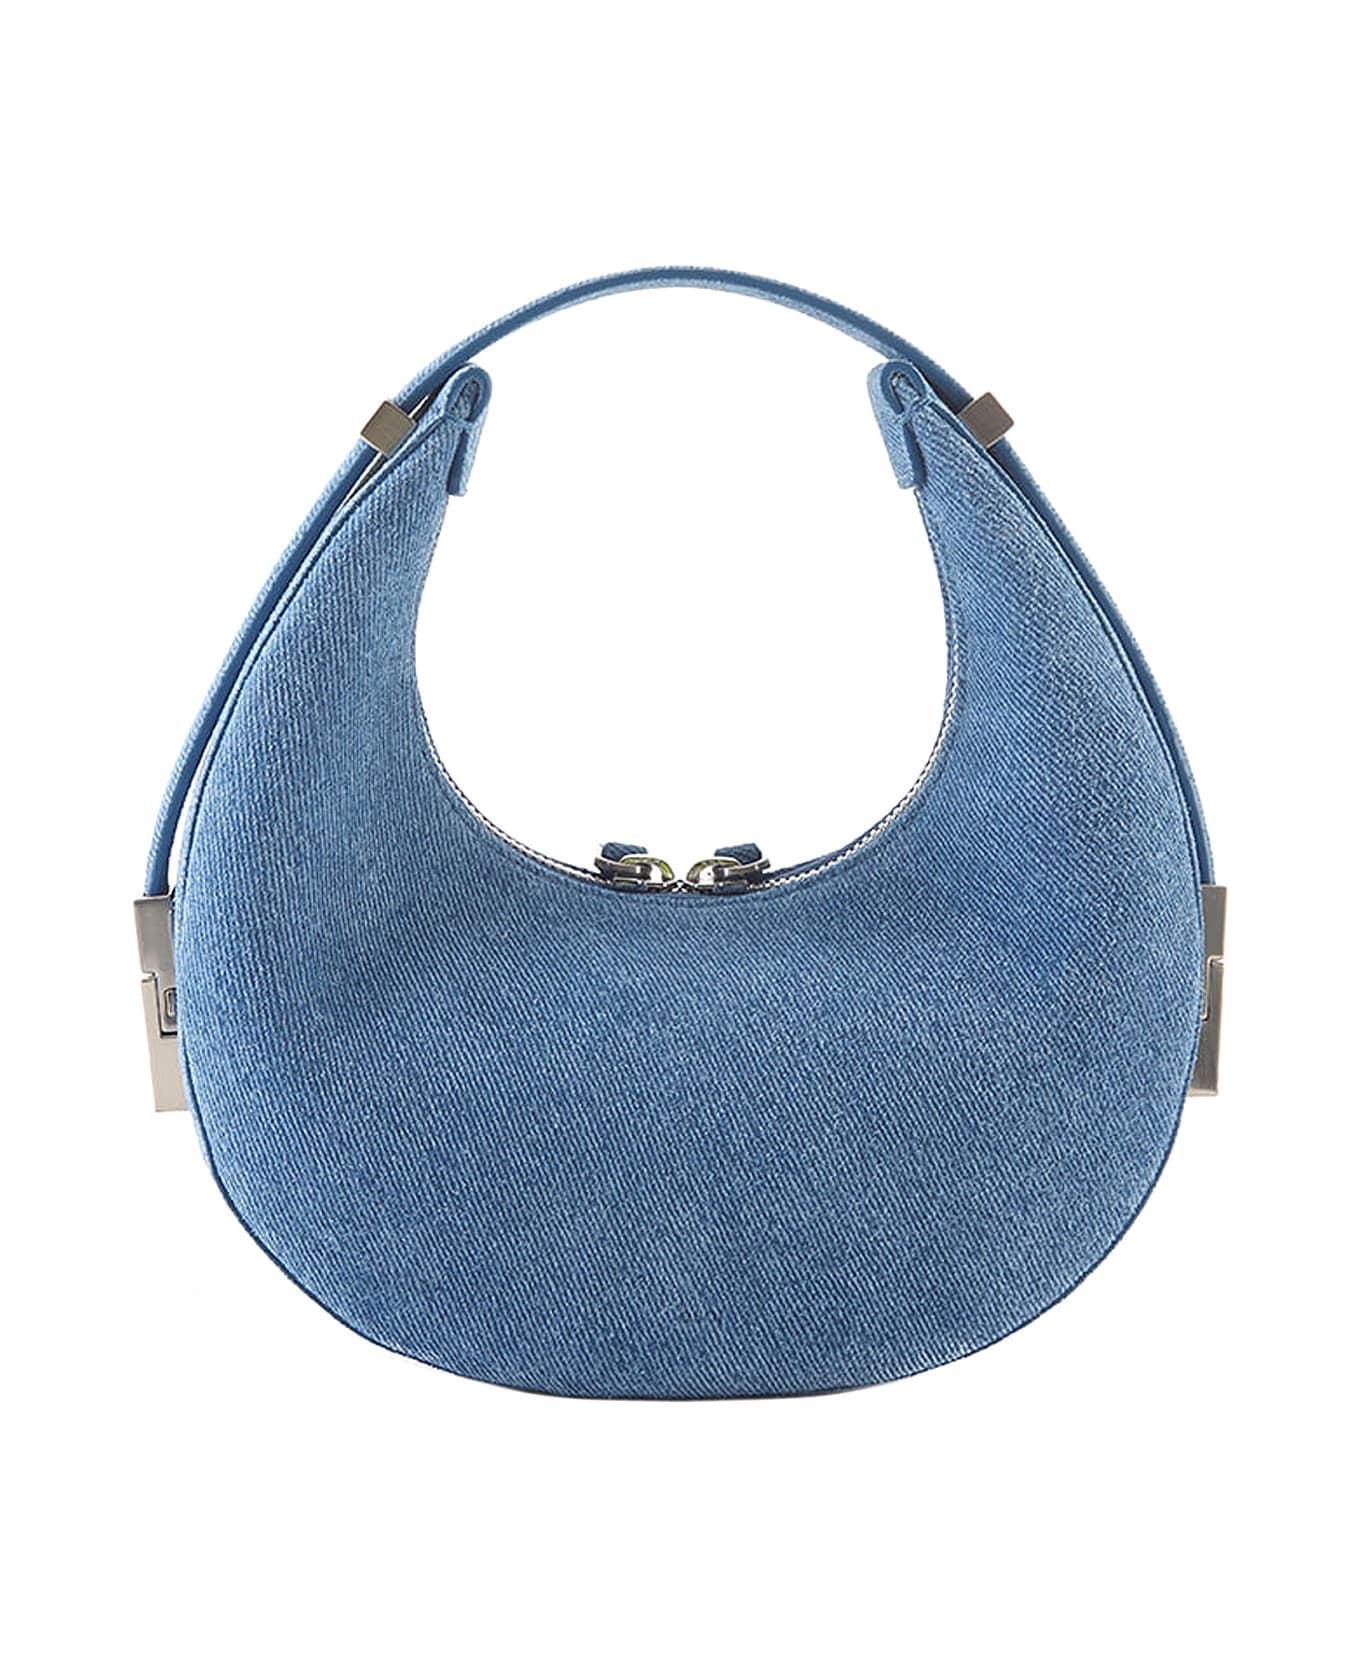 OSOI Toni Mini Shoulder Bag - Blue トートバッグ